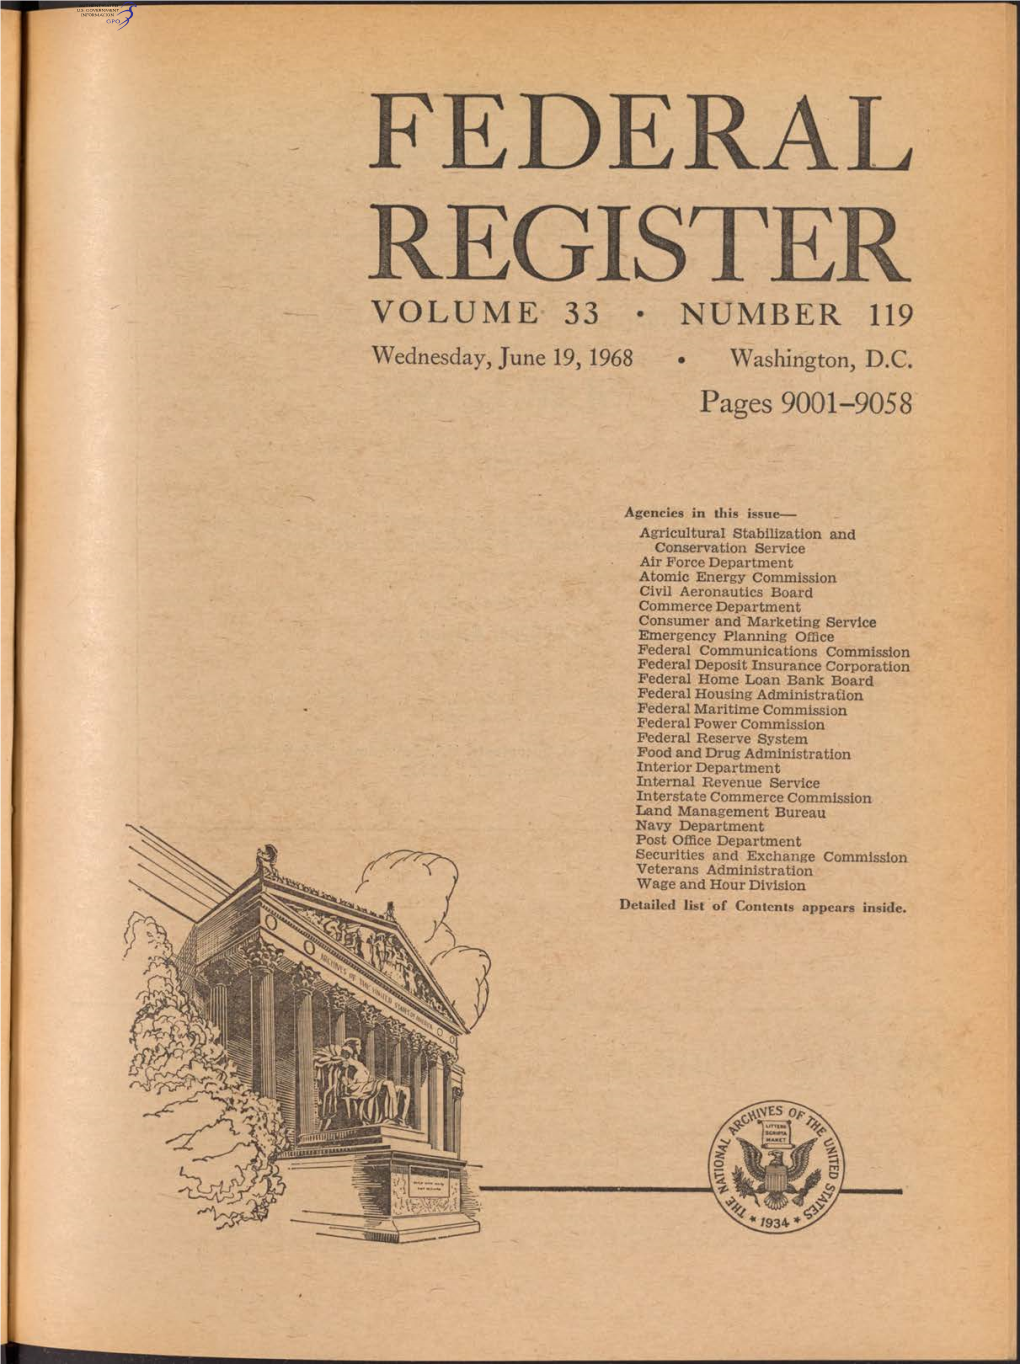 Federal Register Volume 33 • Number 119